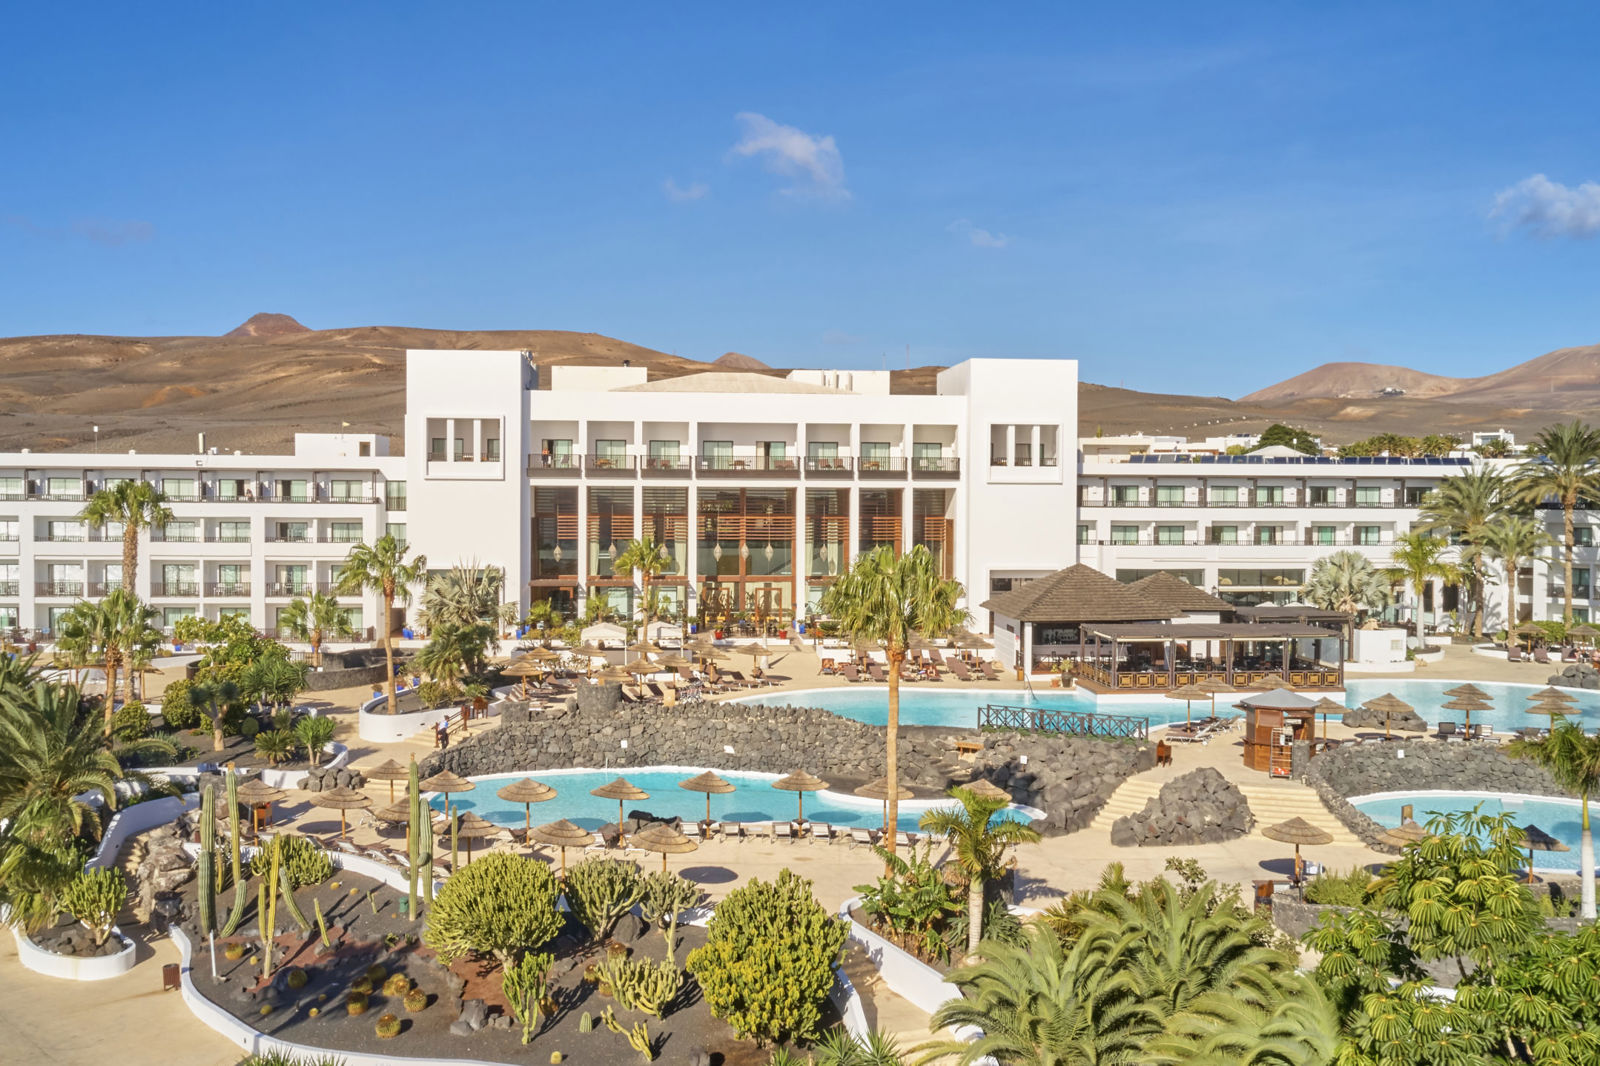 Secrets Lanzarote Resort&Spa